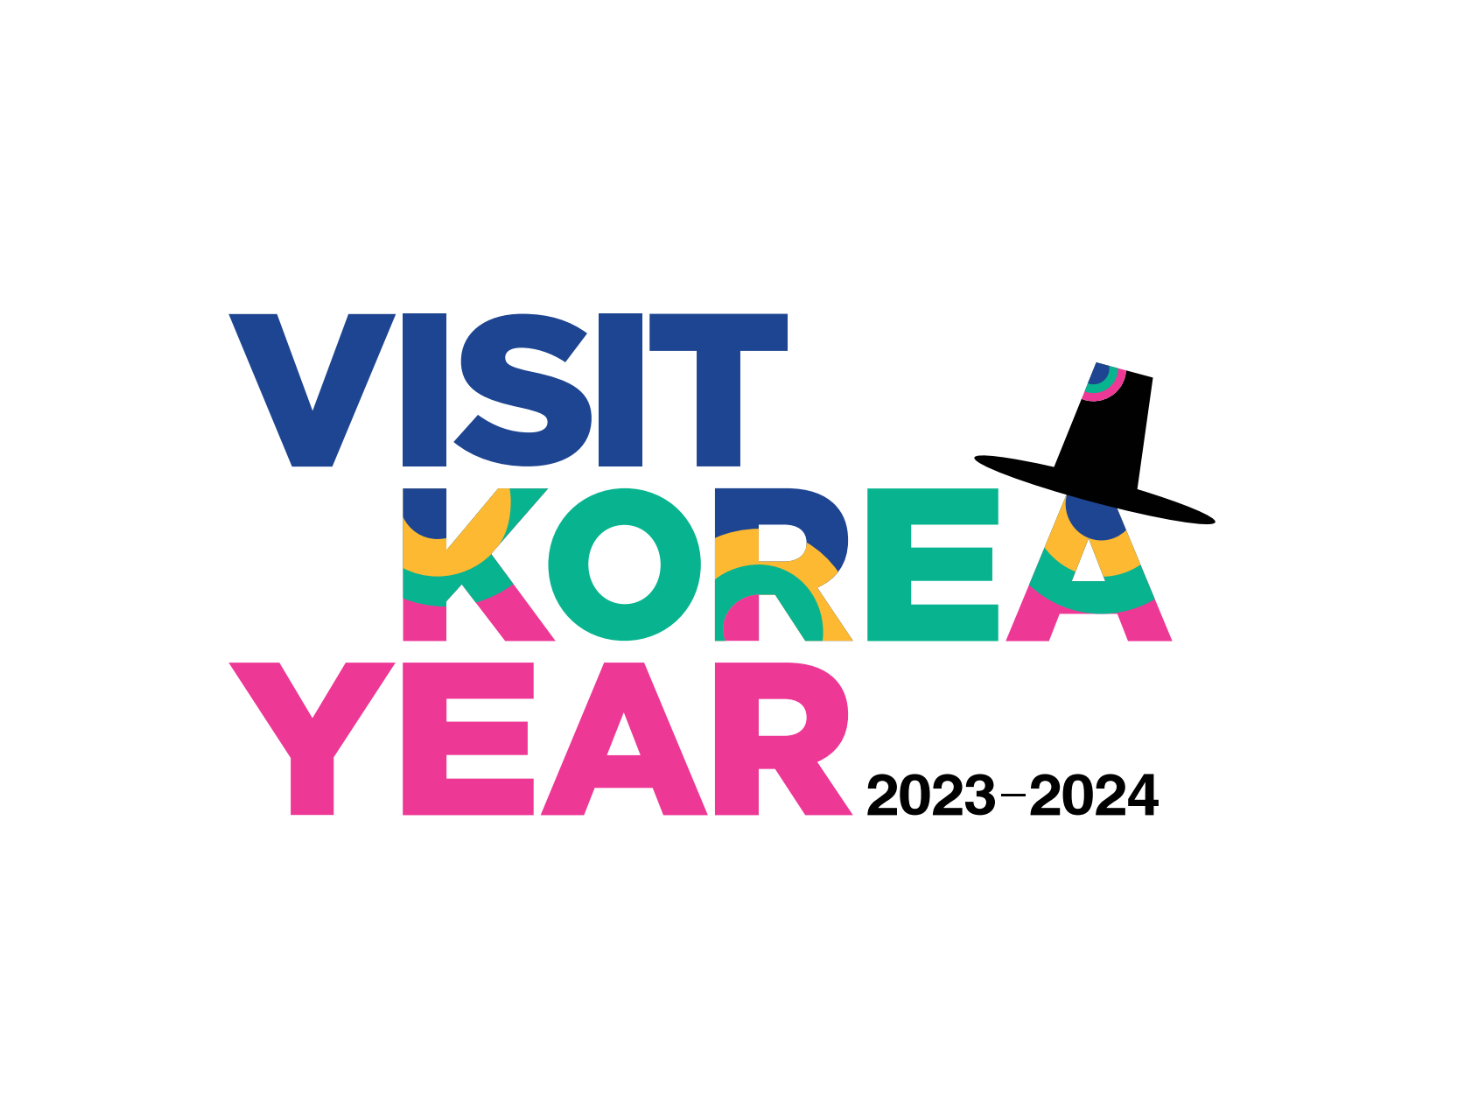 Visit year 2023-2024